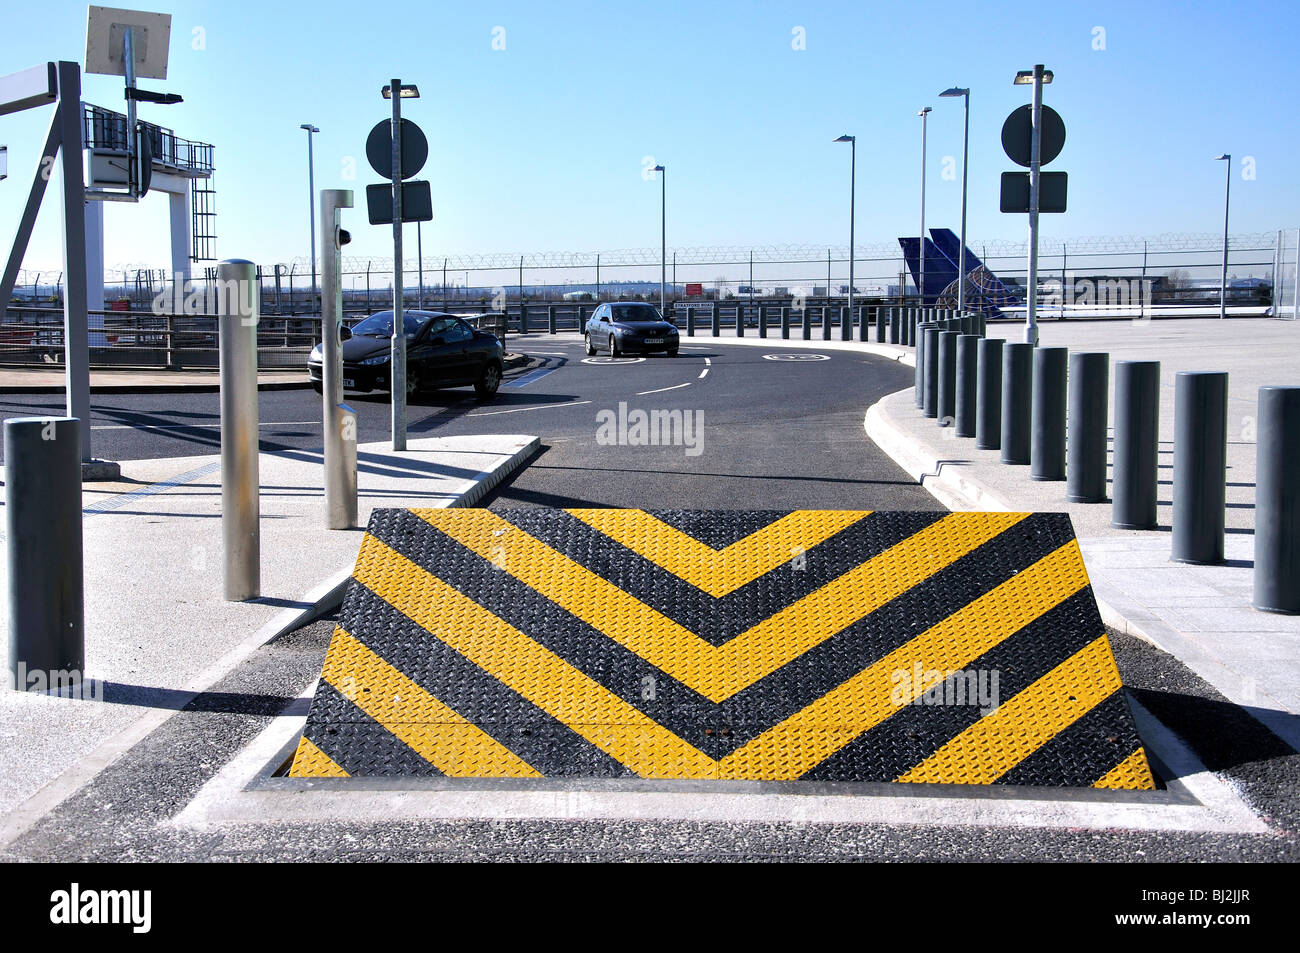 Barrière de sécurité routière, Heathrow Terminal 4, Hounslow, Middlesex, Greater London, Angleterre, Royaume-Uni Banque D'Images